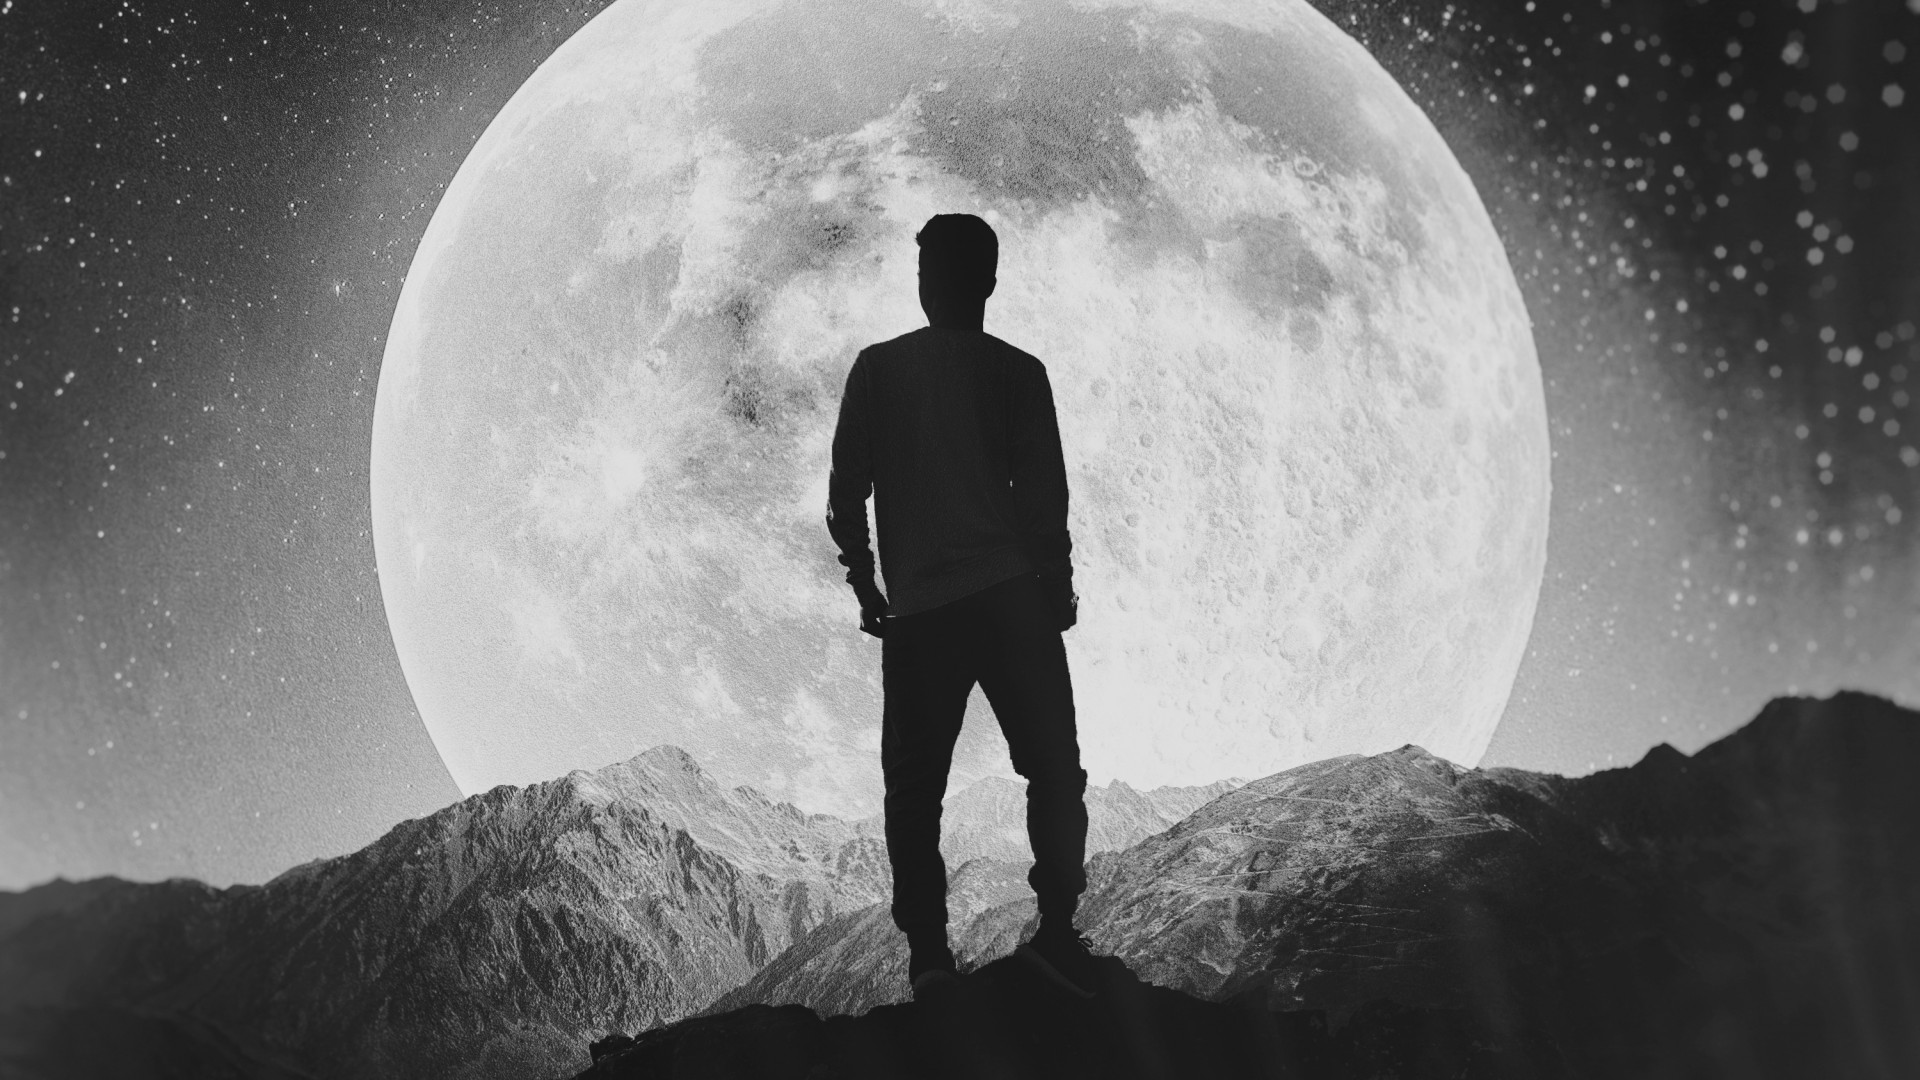 fond d'écran homme seul,photographier,photographie monochrome,ciel,noir et blanc,lune